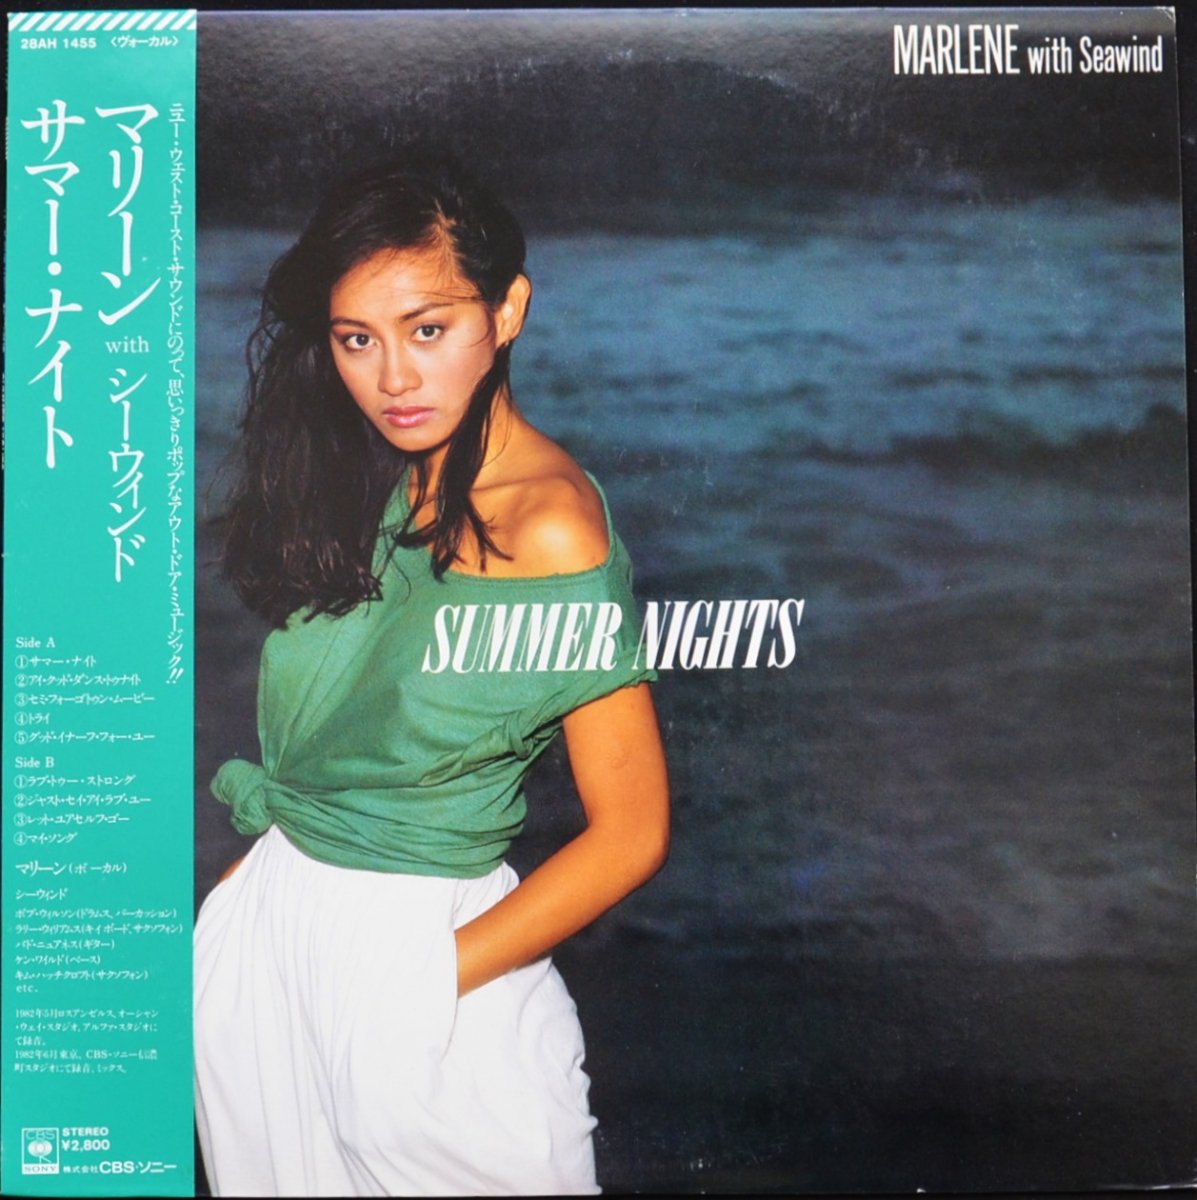 マリーン WITH シーウィンド MARLENE WITH SEAWIND / サマー・ナイト SUMMER NIGHTS (LP)